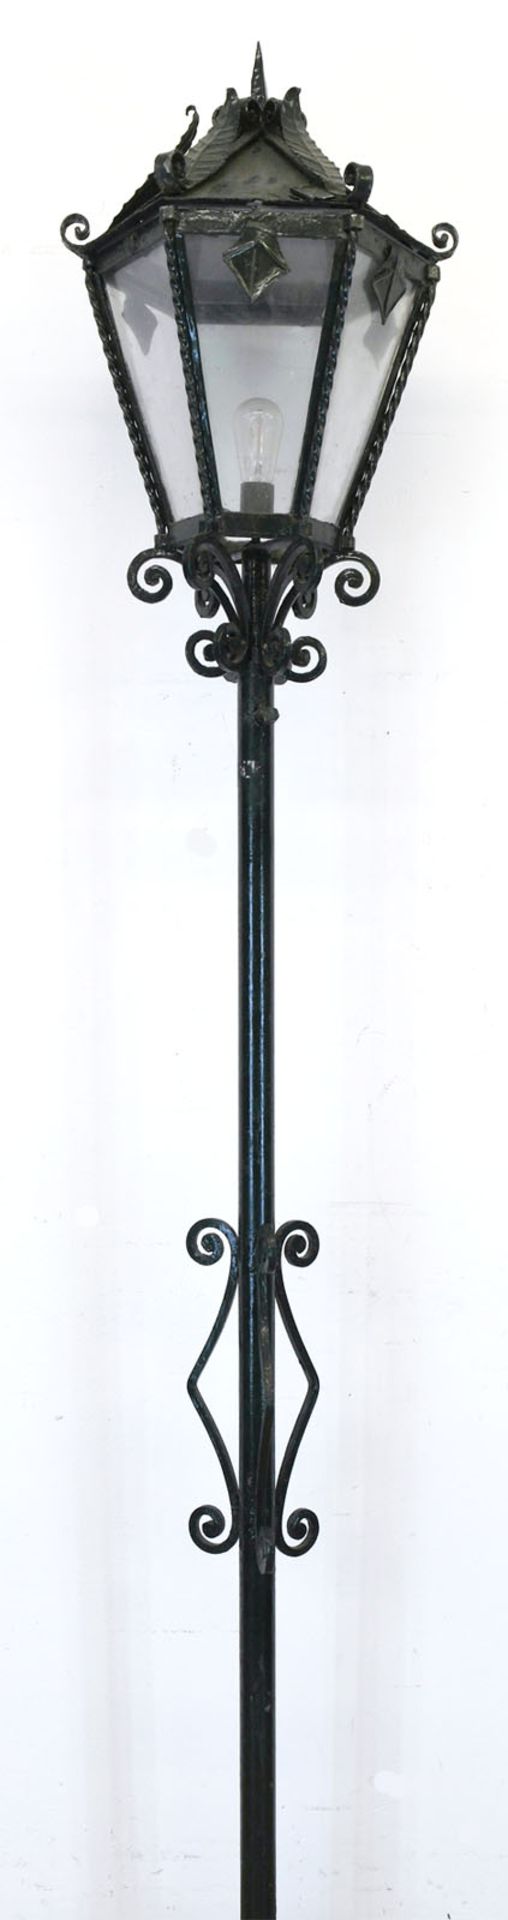 Laterne, 1920/30, Gußeisen, 6-kantig verglast, Dach beschädigt und korrodiert, H. 230 cm, Dm. 46 cm